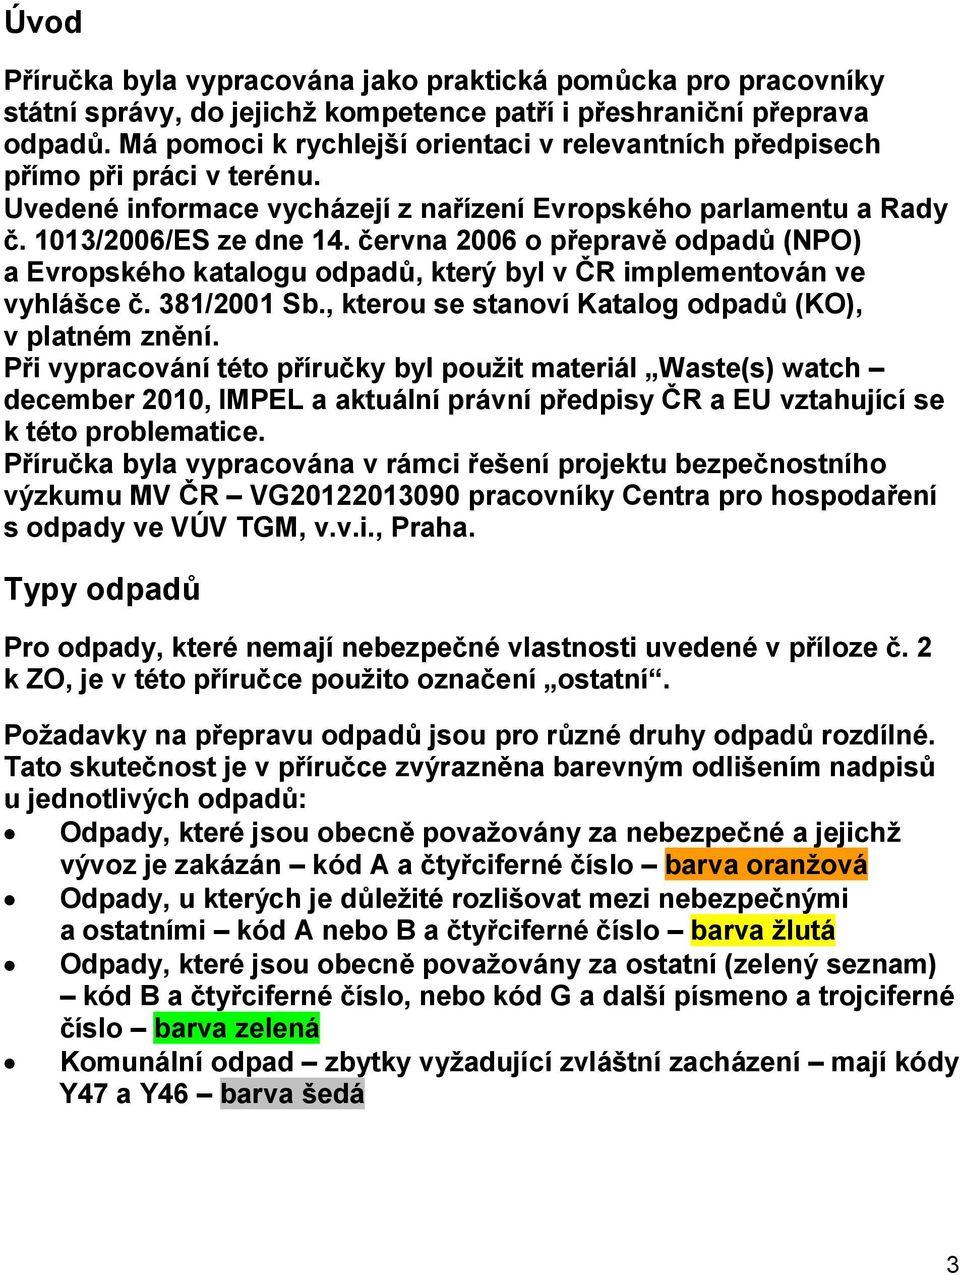 června 2006 o přepravě odpadů (NPO) a Evropského katalogu odpadů, který byl v ČR implementován ve vyhlášce č. 381/2001 Sb., kterou se stanoví Katalog odpadů (KO), v platném znění.